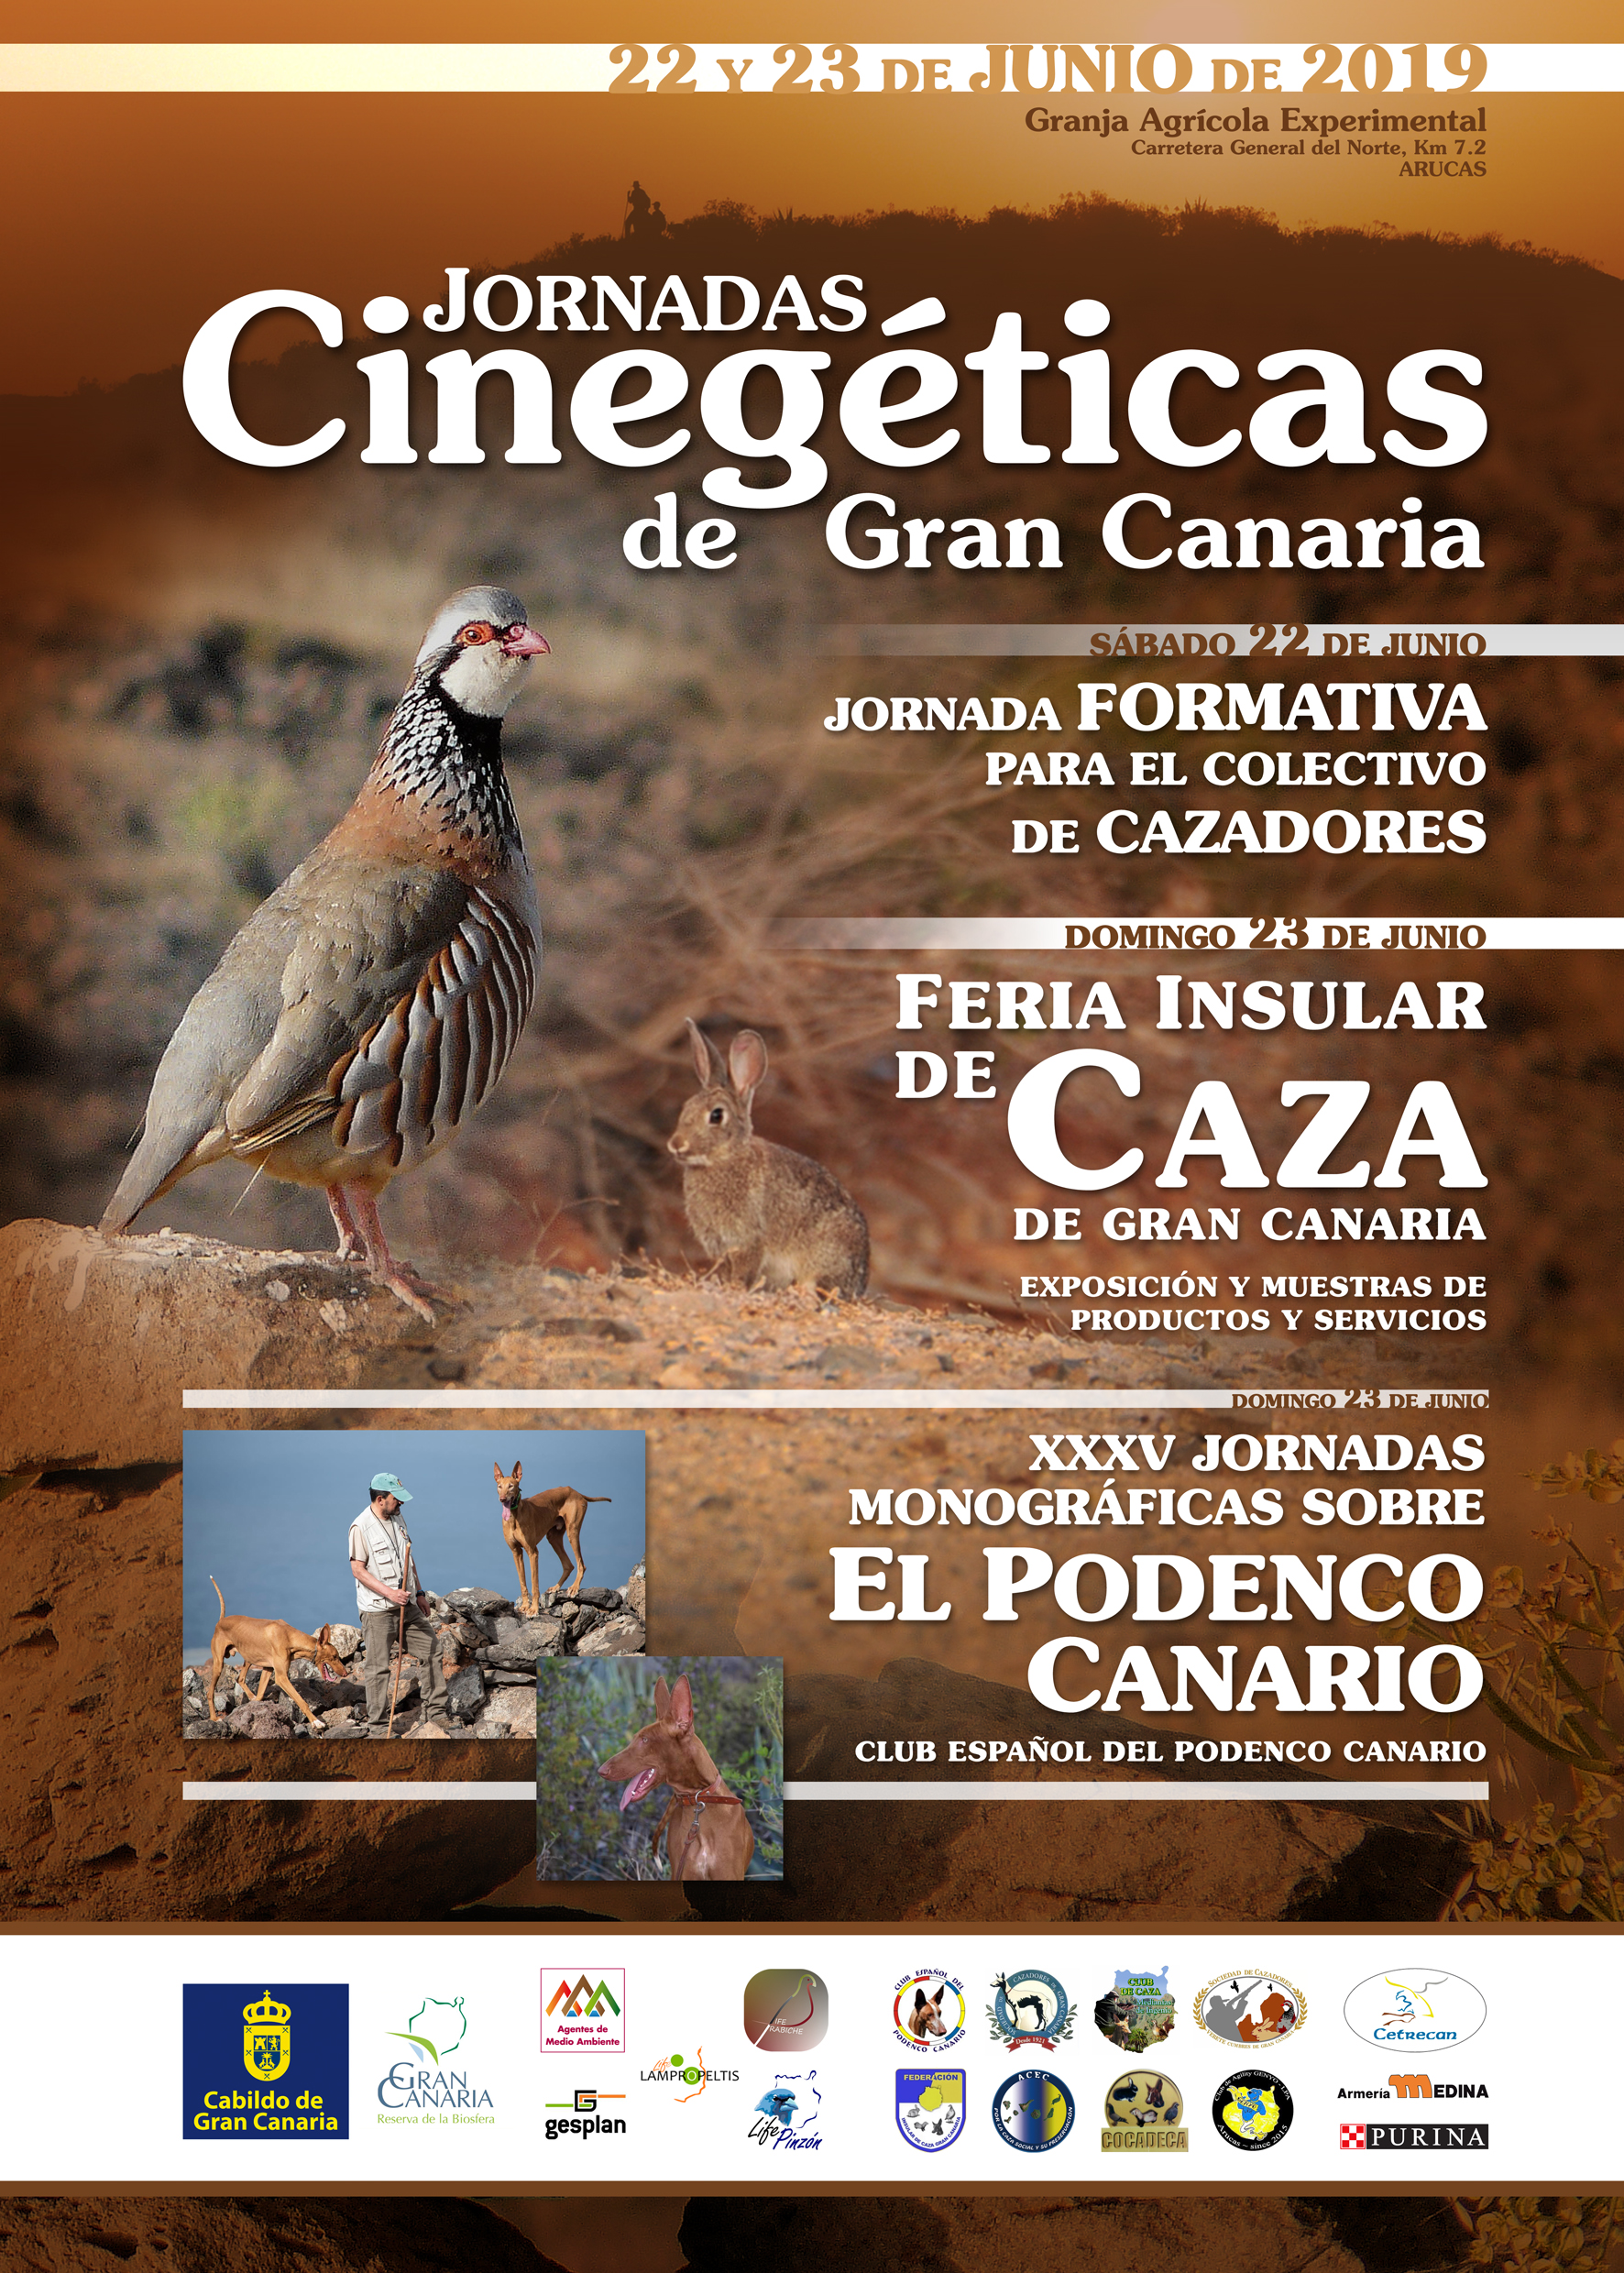 Jornadas Cinegéticas de Gran Canaria - 22 y 23 de junio 2019